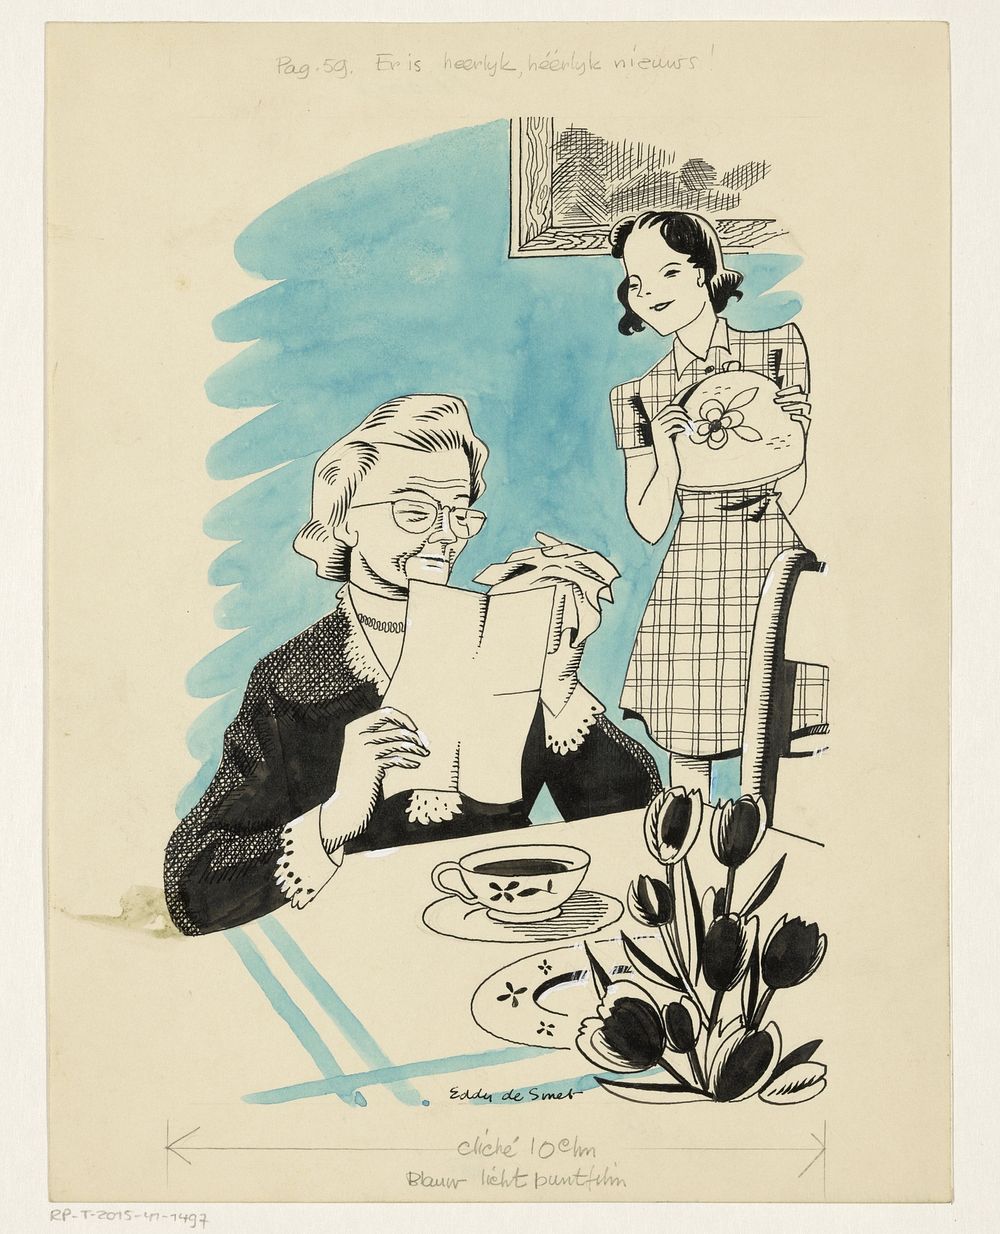 Oudere vrouw leest een brief (in or before 1946) by Eddy de Smet